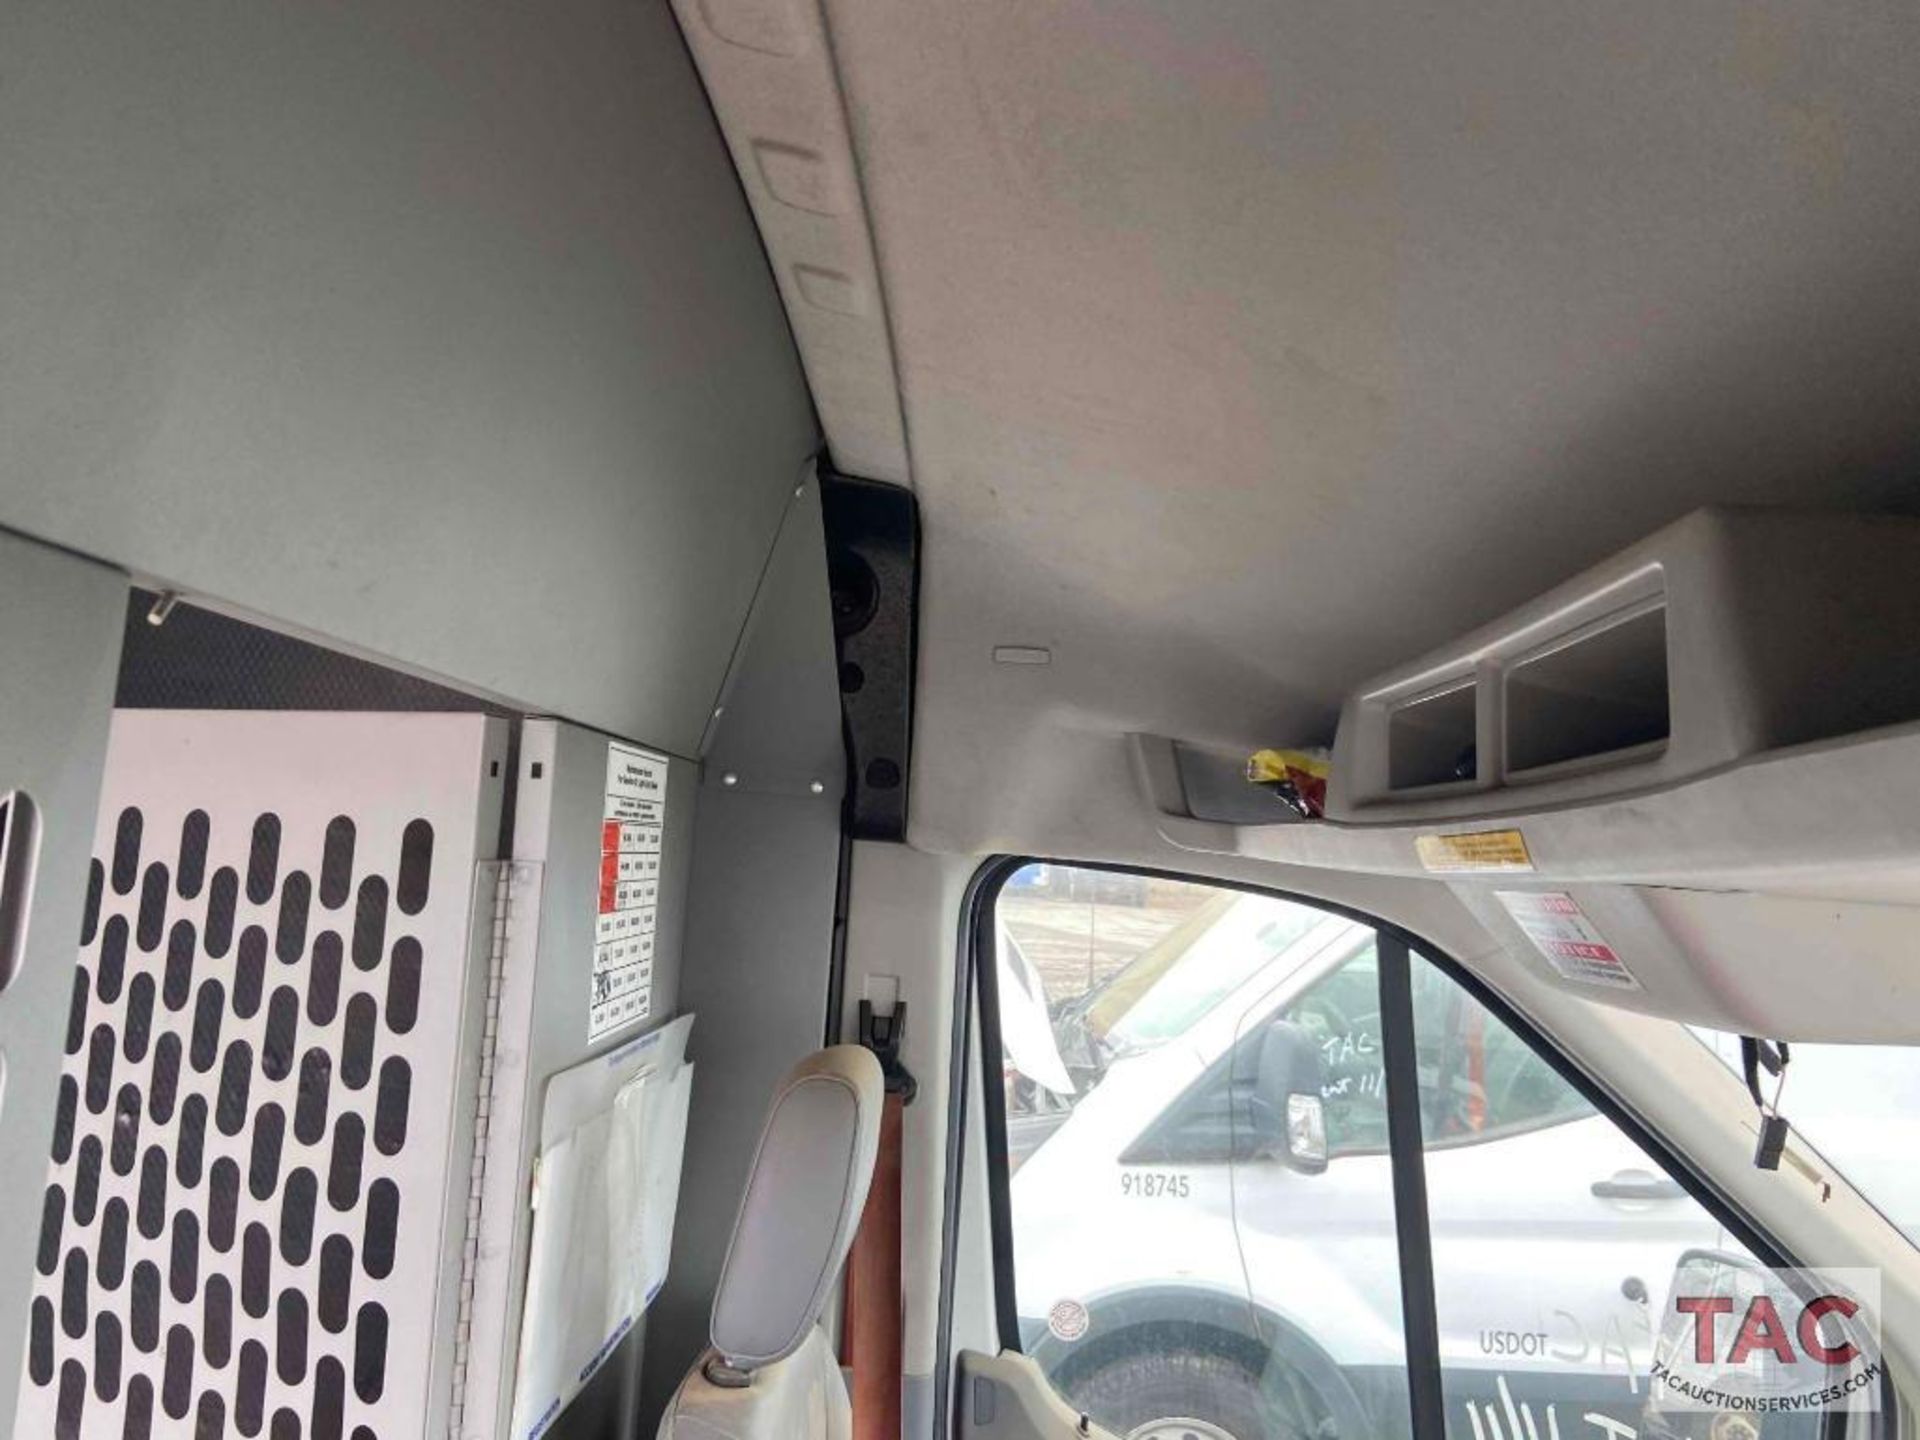 2017 Ford Transit 150 Cargo Van - Image 55 of 99